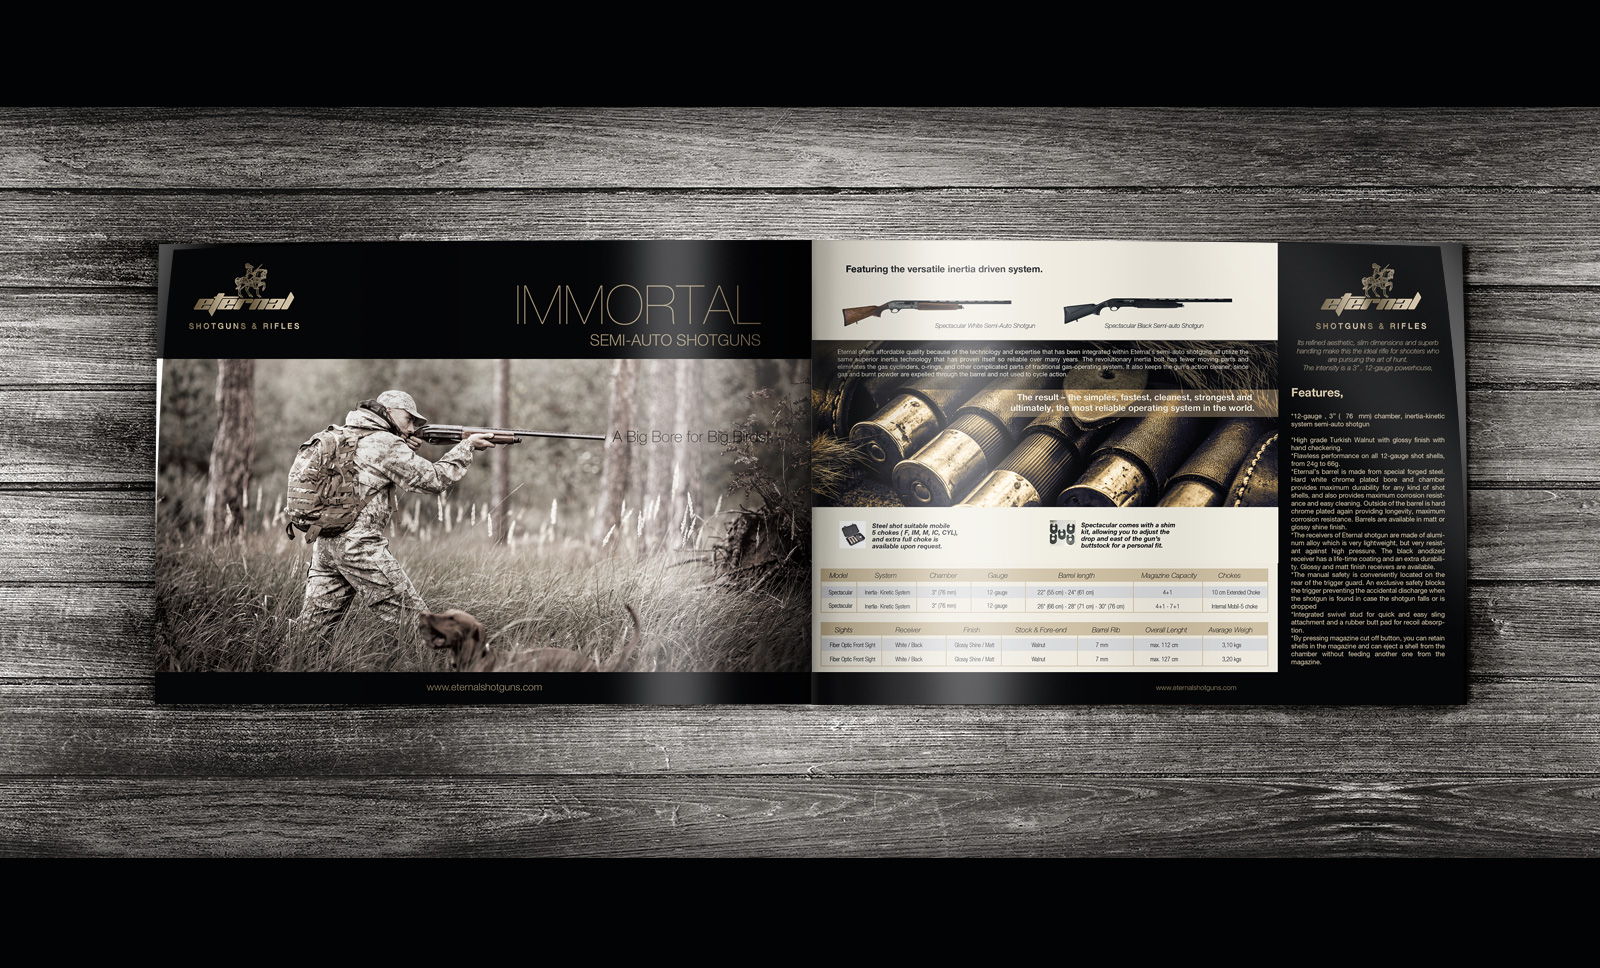 Creas Creative Tasarım ve Reklam Ajansı İzmir - Eternal Silah Katalog Tasarımı